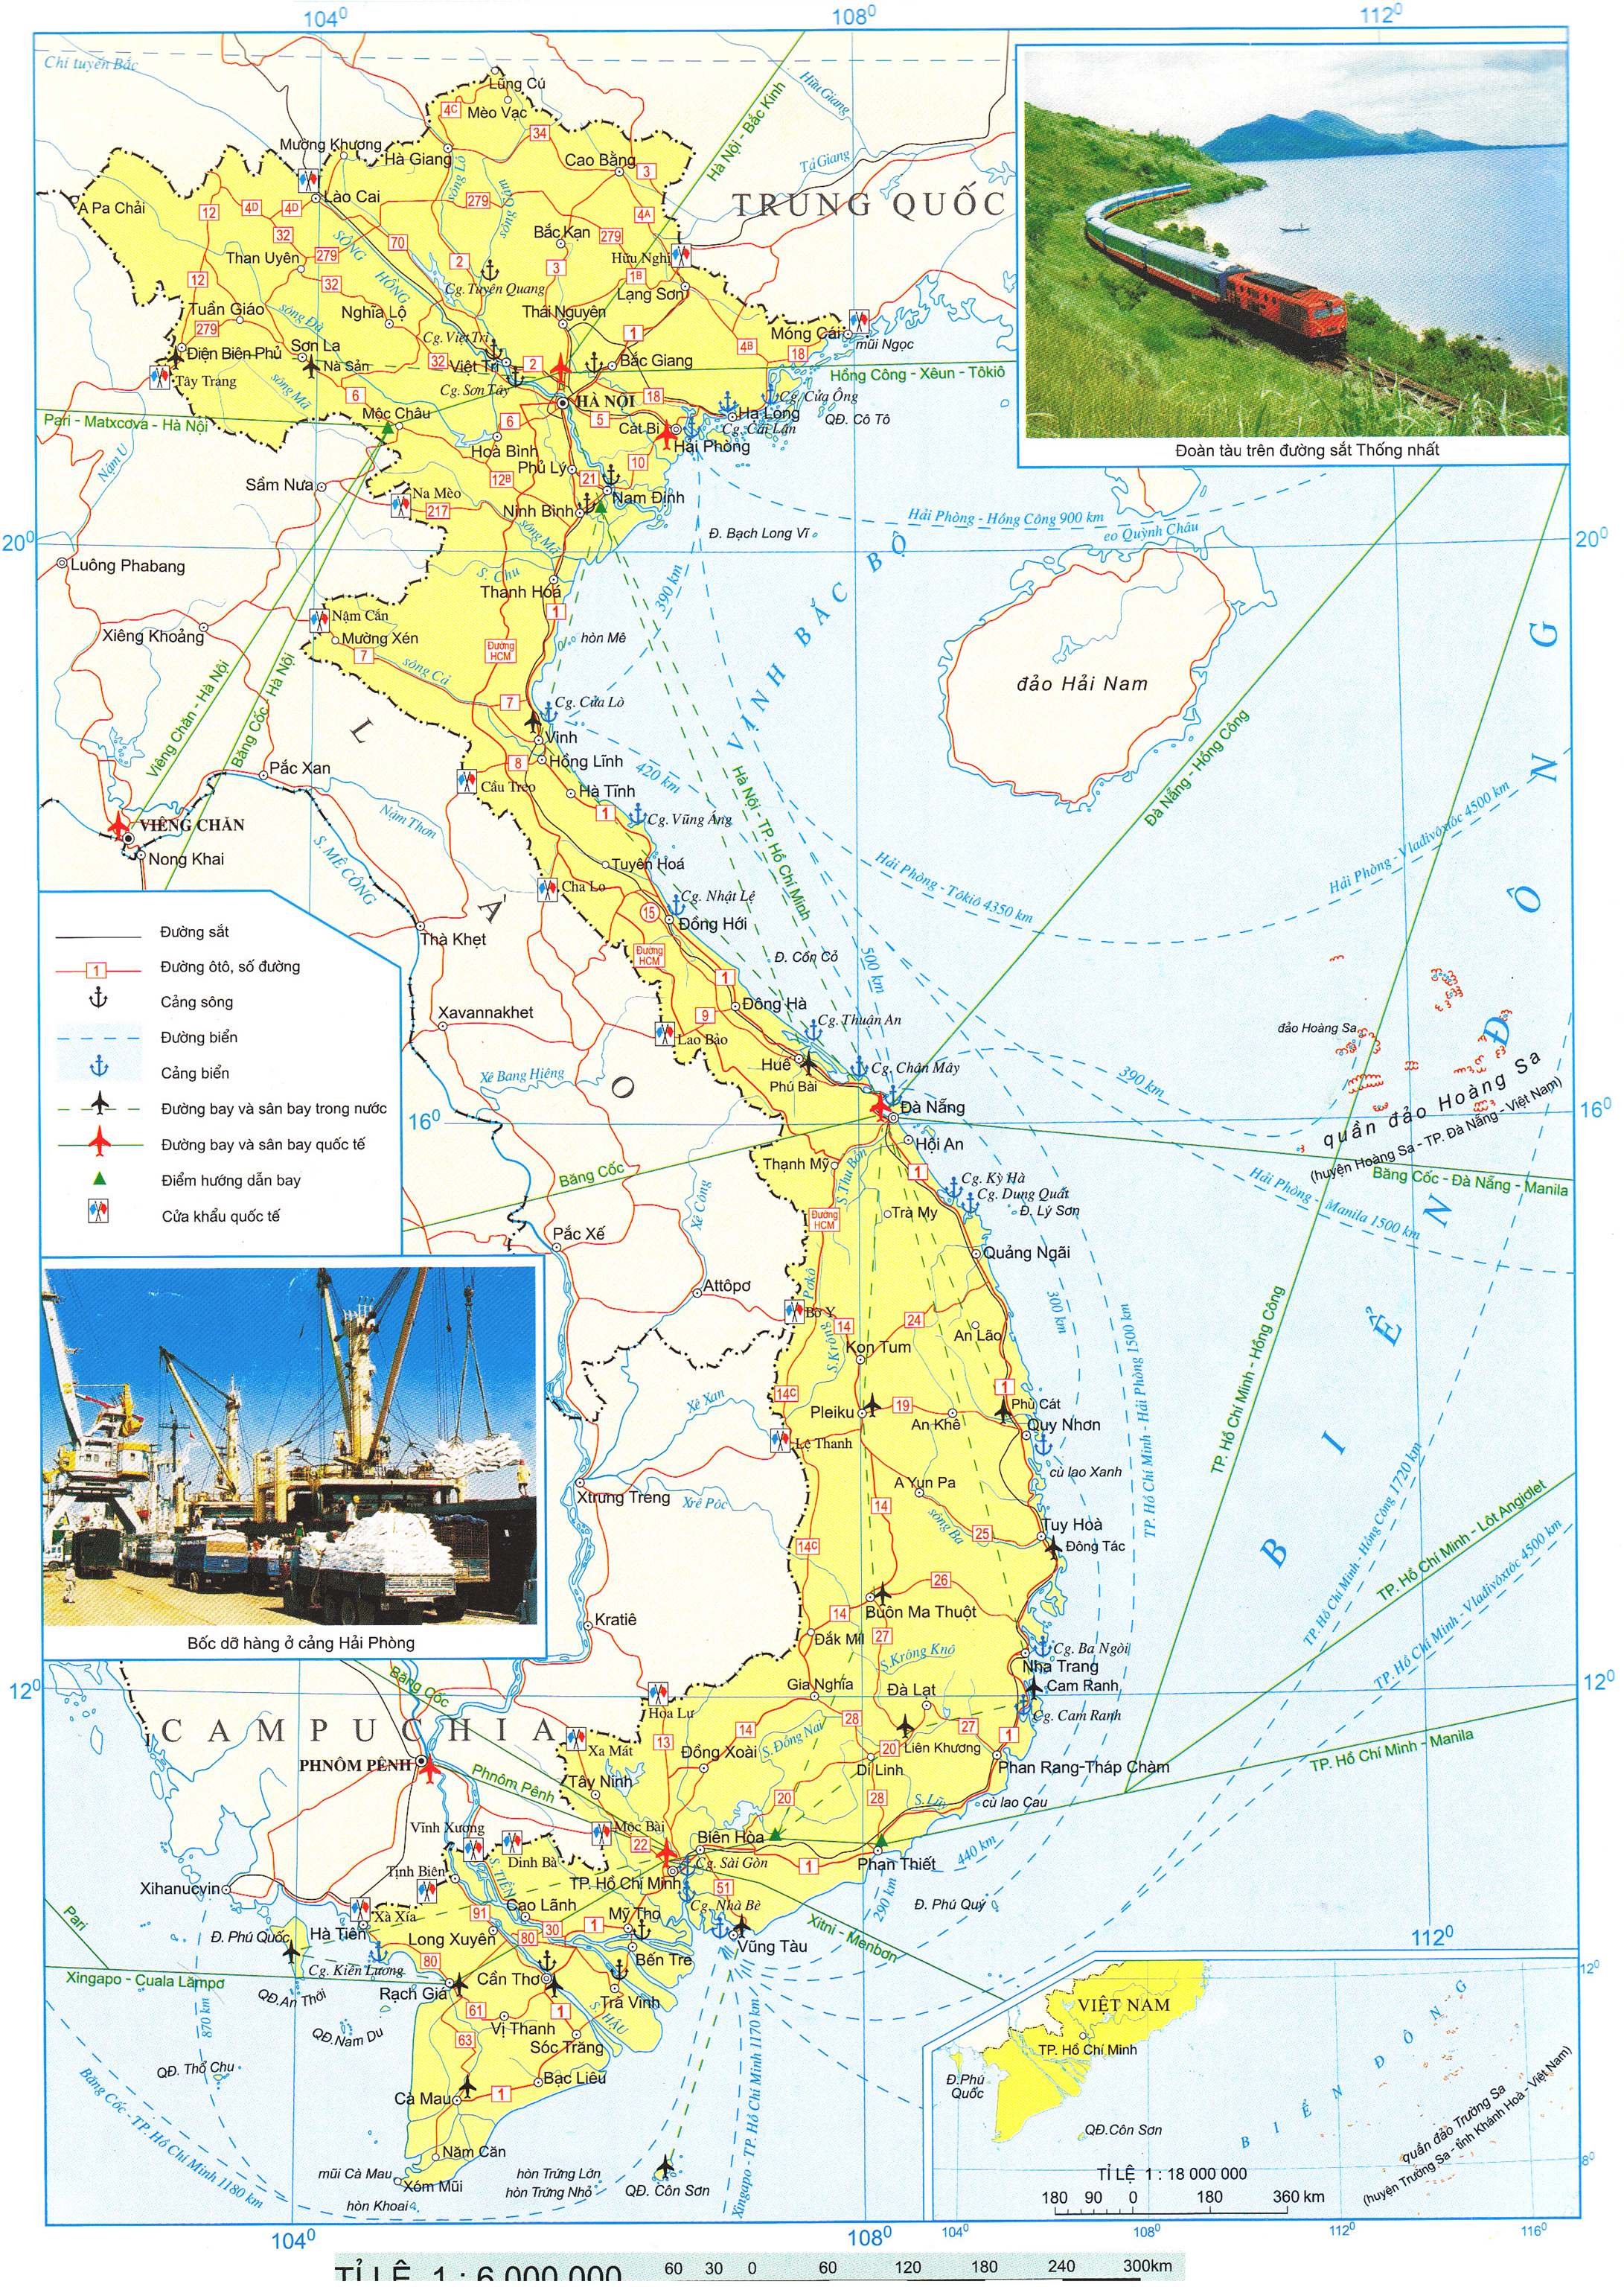 Atlat địa lý Việt Nam 2024 cập nhật đầy đủ các thông tin về địa lý và văn hóa của Việt Nam. Với các chức năng tiên tiến như tìm kiếm và định vị GPS, du khách sẽ dễ dàng tìm thấy các điểm đến nổi tiếng và ẩn dật nhất của đất nước. Hãy khám phá Việt Nam theo cách của bạn.